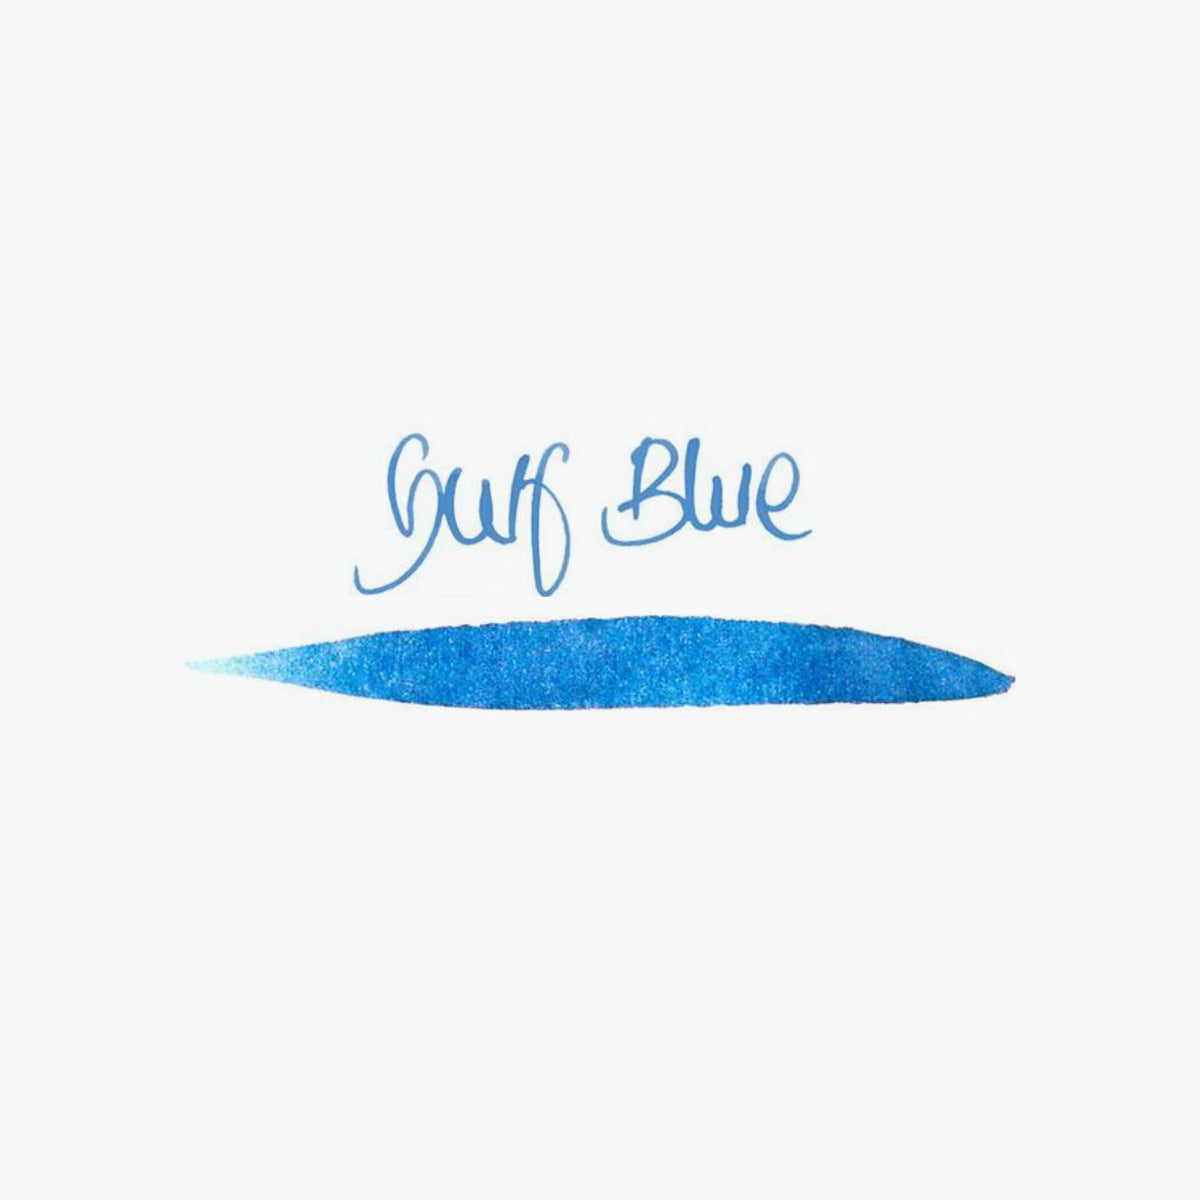 Graf von Faber-Castell - Fountain Pen Ink - Gulf Blue